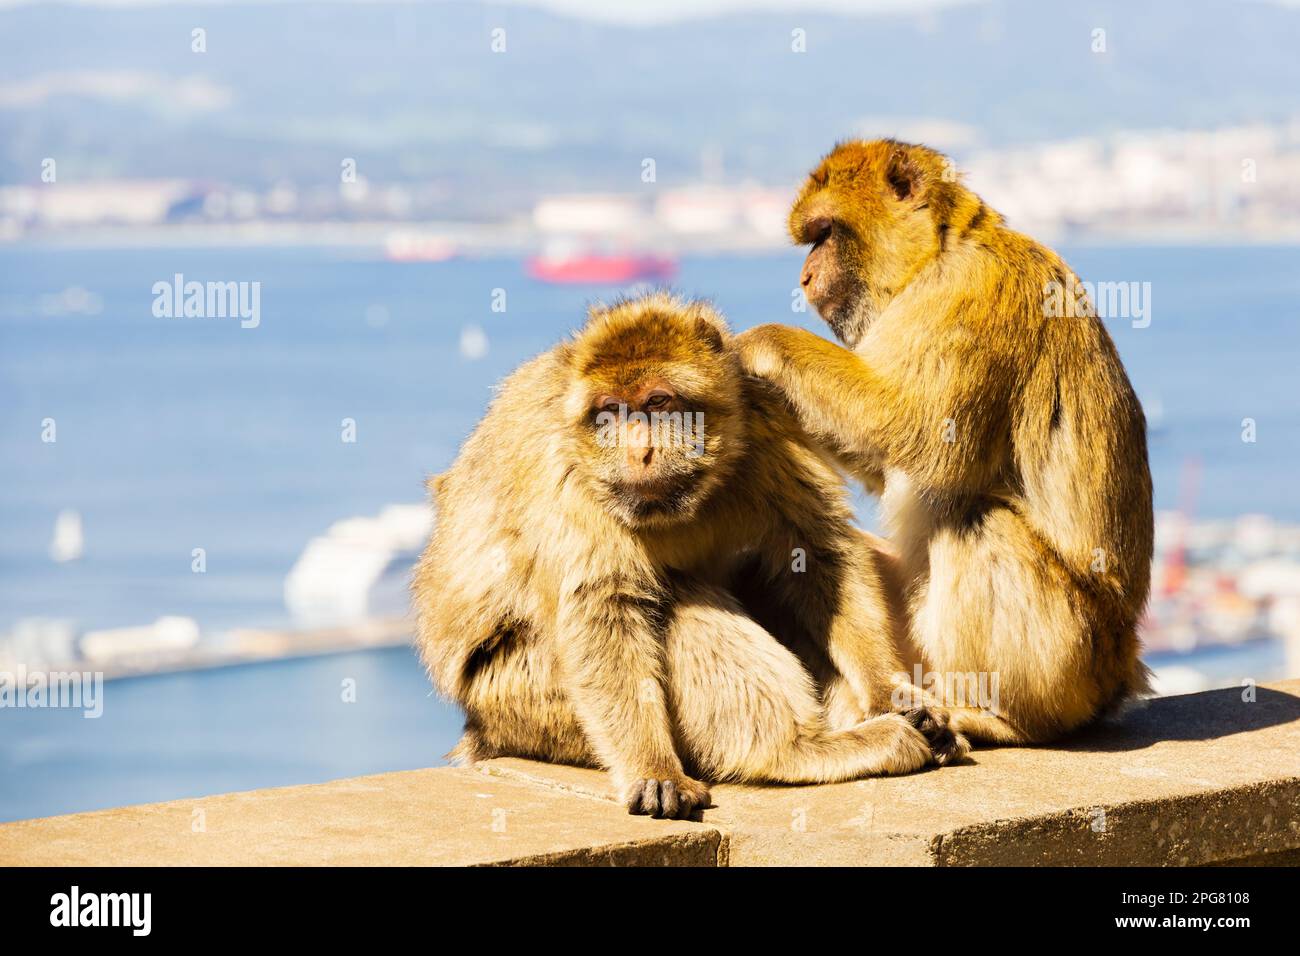 El famoso Barbary Macaques Grooming. Territorio Británico de Ultramar de Gibraltar, el Peñón de Gibraltar en la Península Ibérica. Foto de stock